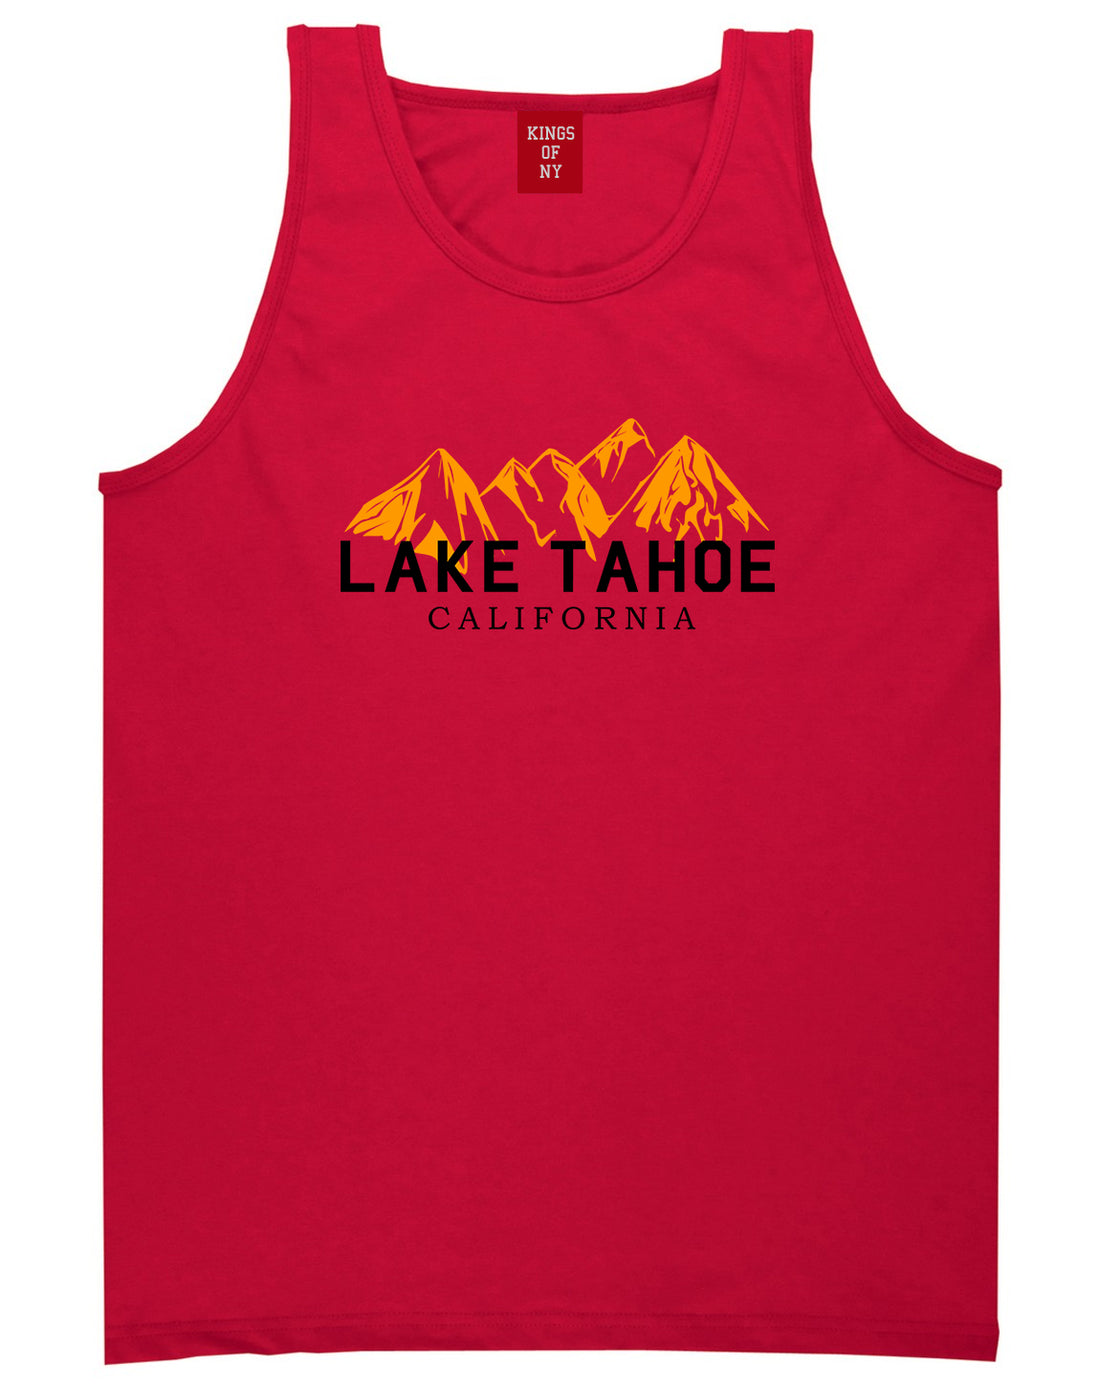 Lake Tahoe California Mountains Mens Tank Top Shirt Red